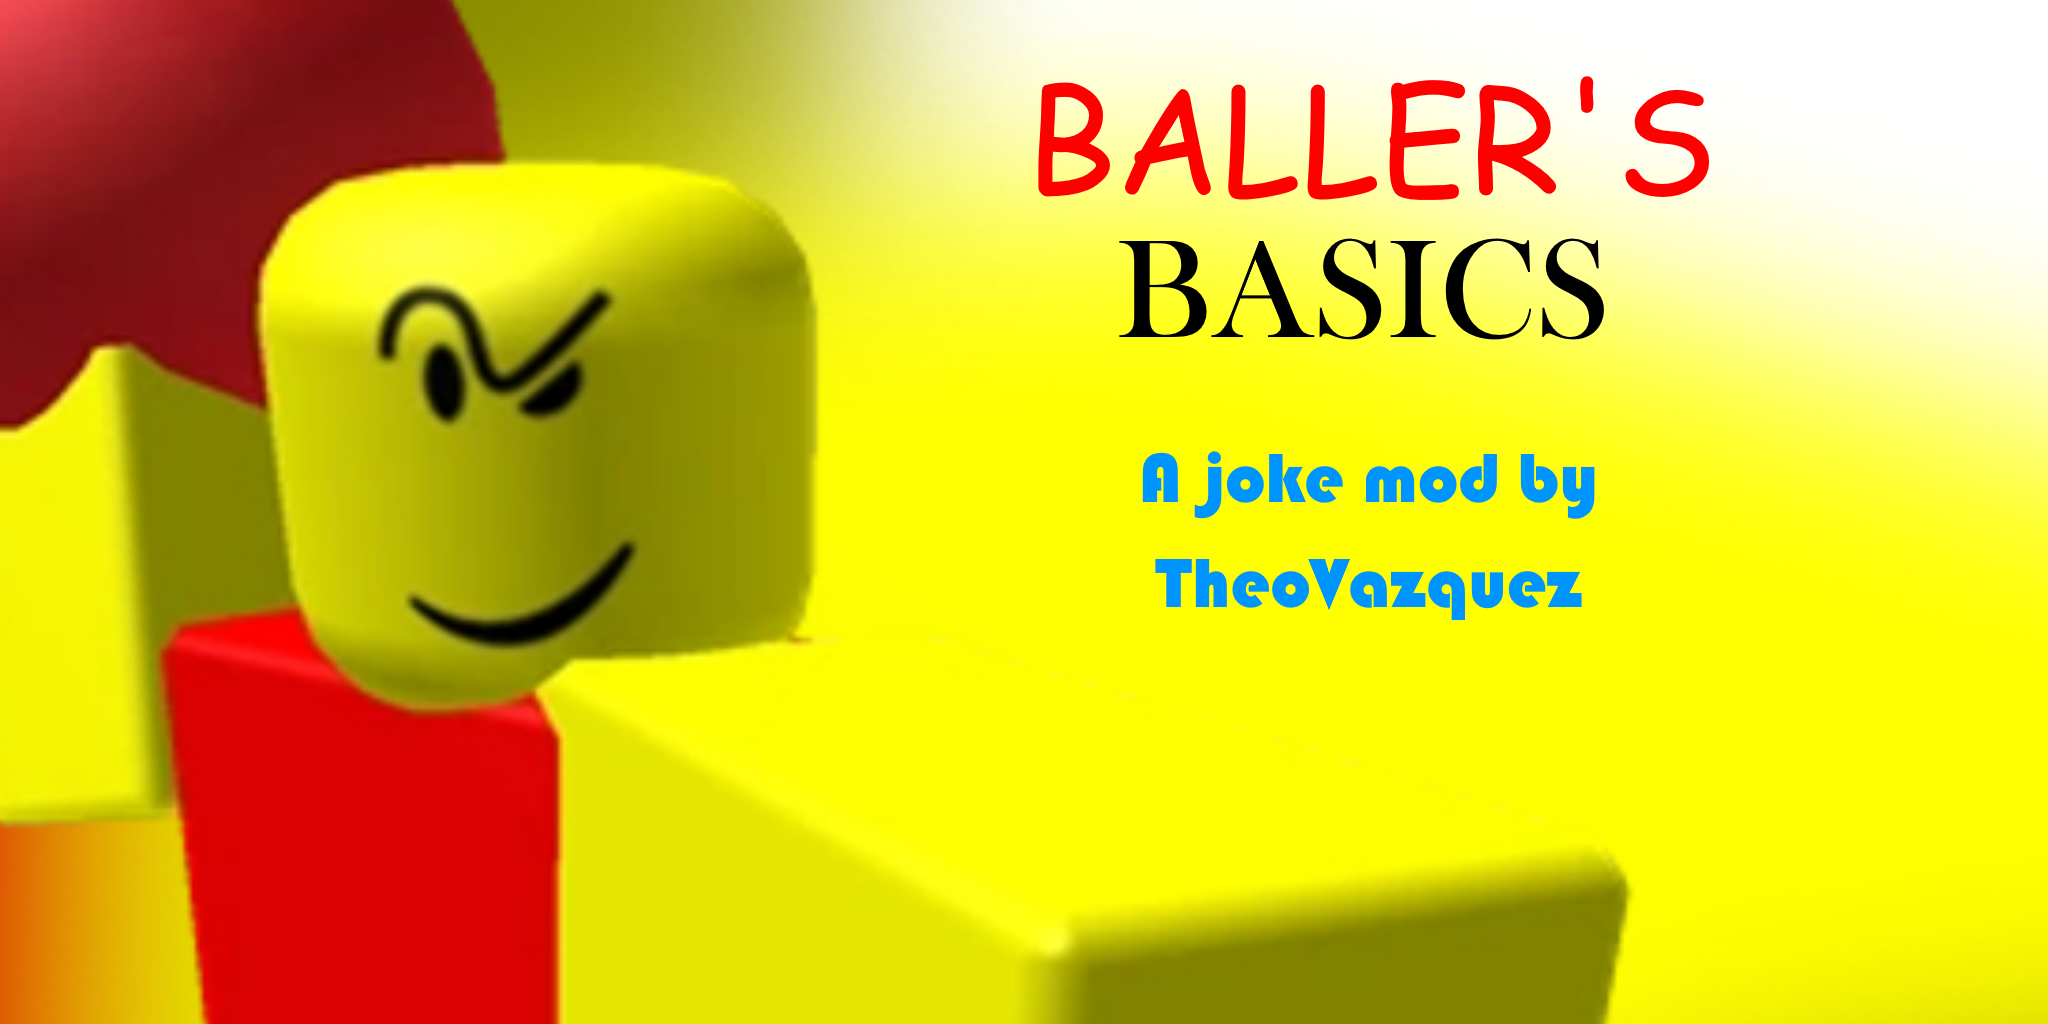 Baller's Basics in Balls (Joke mod)